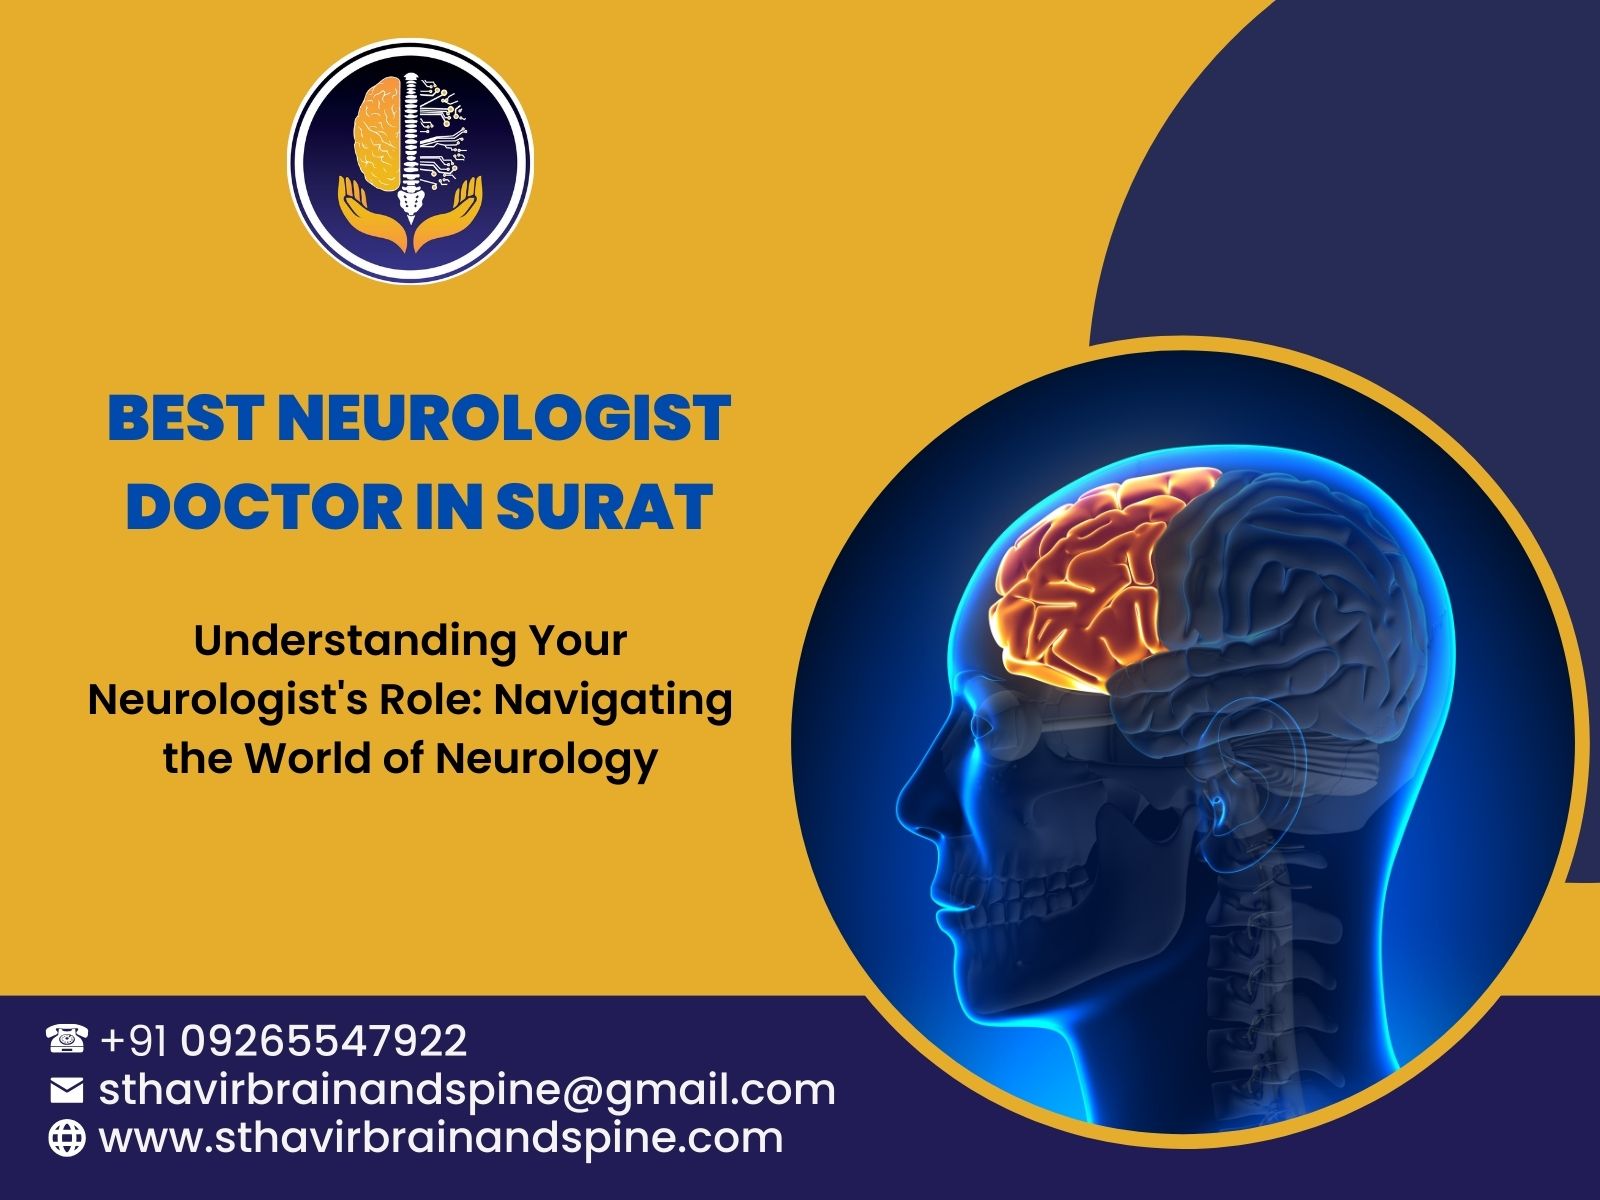 Top 1 Neurologist Doctor In Surat